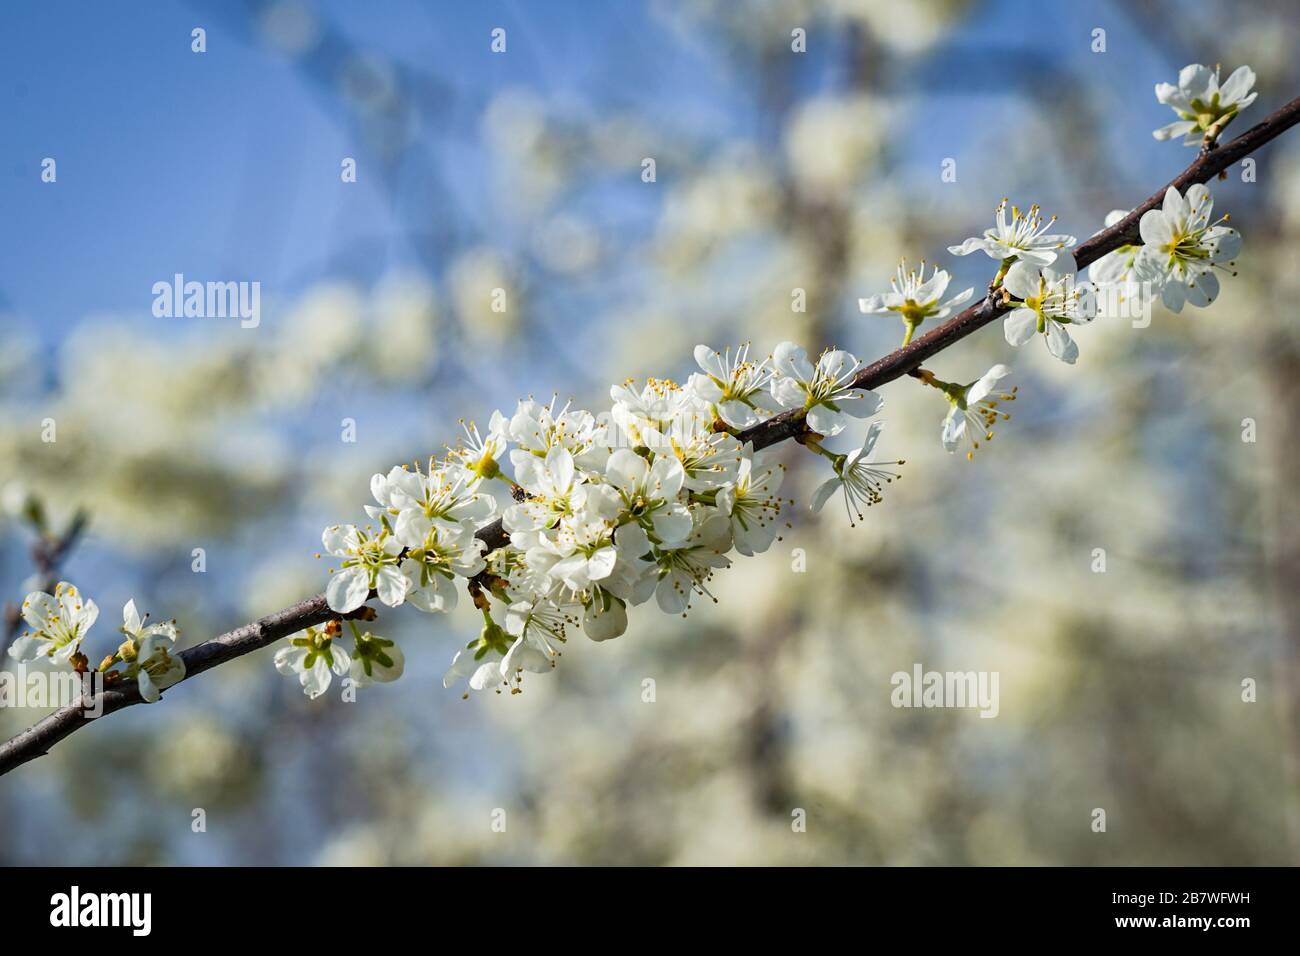 La ciliegia fiorisce su un ramoscello preso da un blurred sfondo di altri ramoscelli e fiori Foto Stock